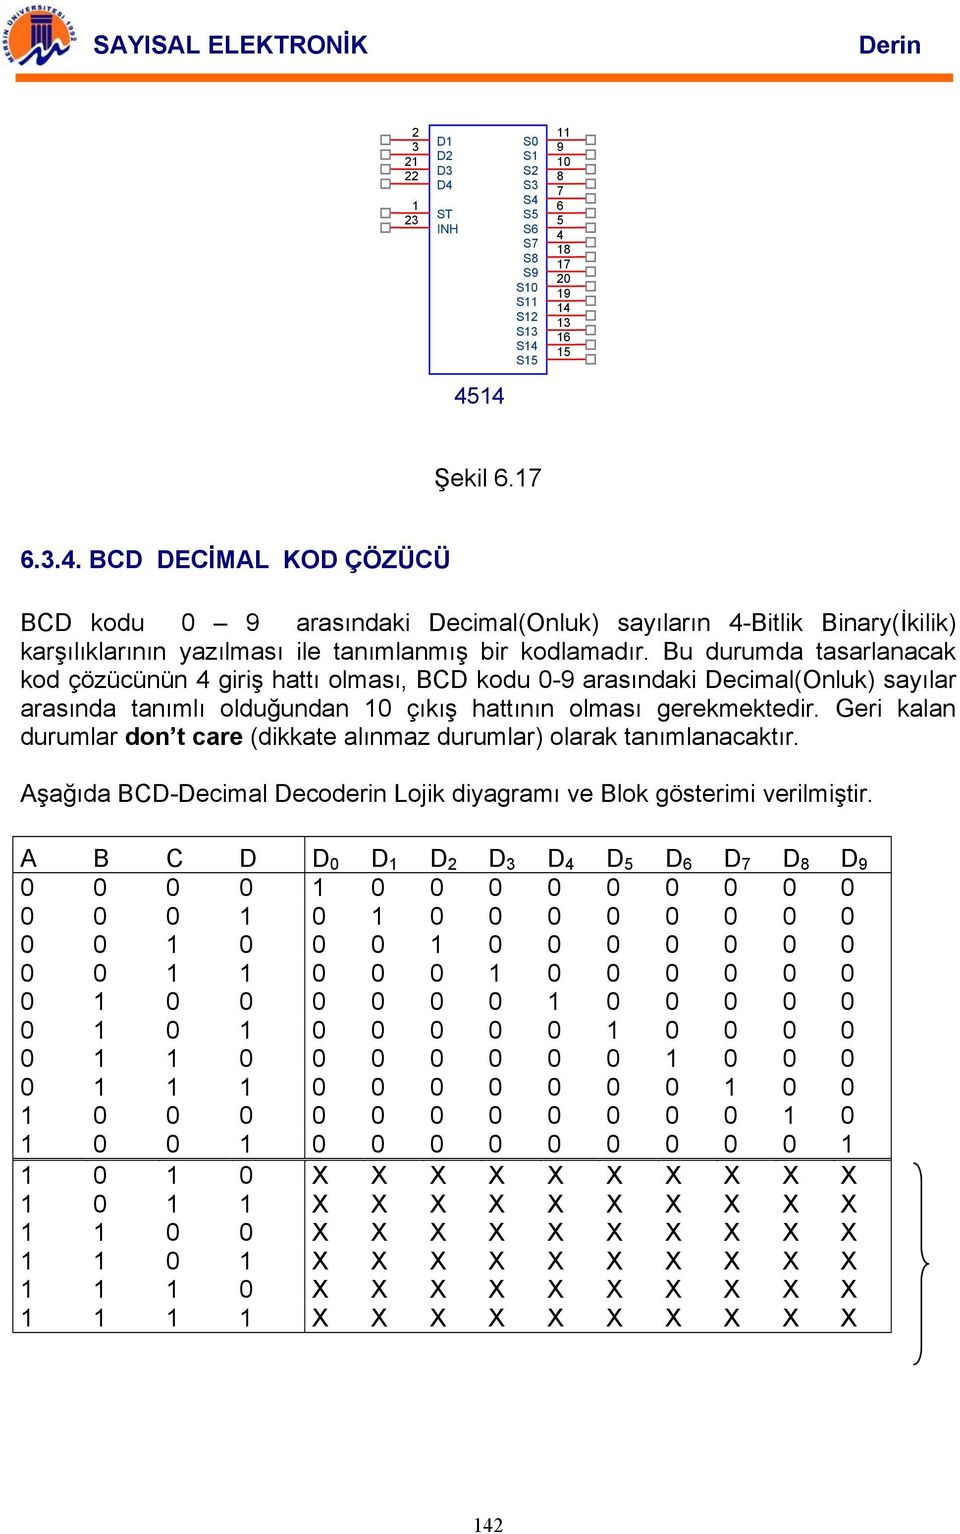 Geri kalan durumlar don t care (dikkate alınmaz durumlar) olarak tanımlanacaktır. şağıda -ecimal ecoderin Lojik diyagramı ve lok gösterimi verilmiştir.